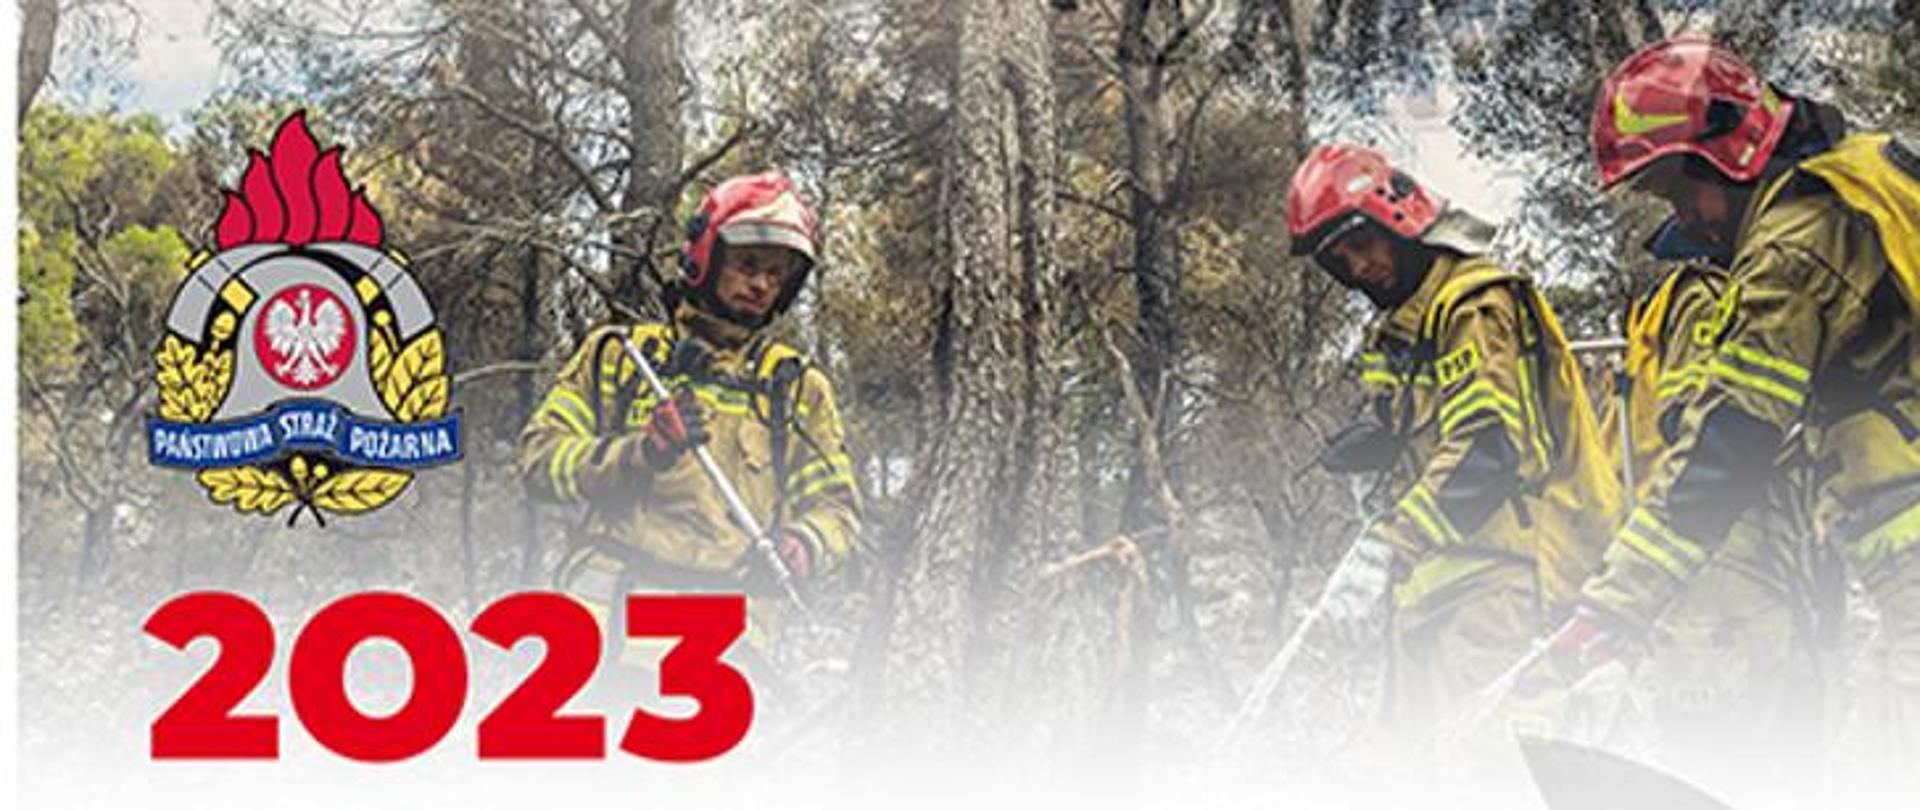 Na zdjęciu logo PSP oraz strażacy biorący udział w akcji gaśniczej